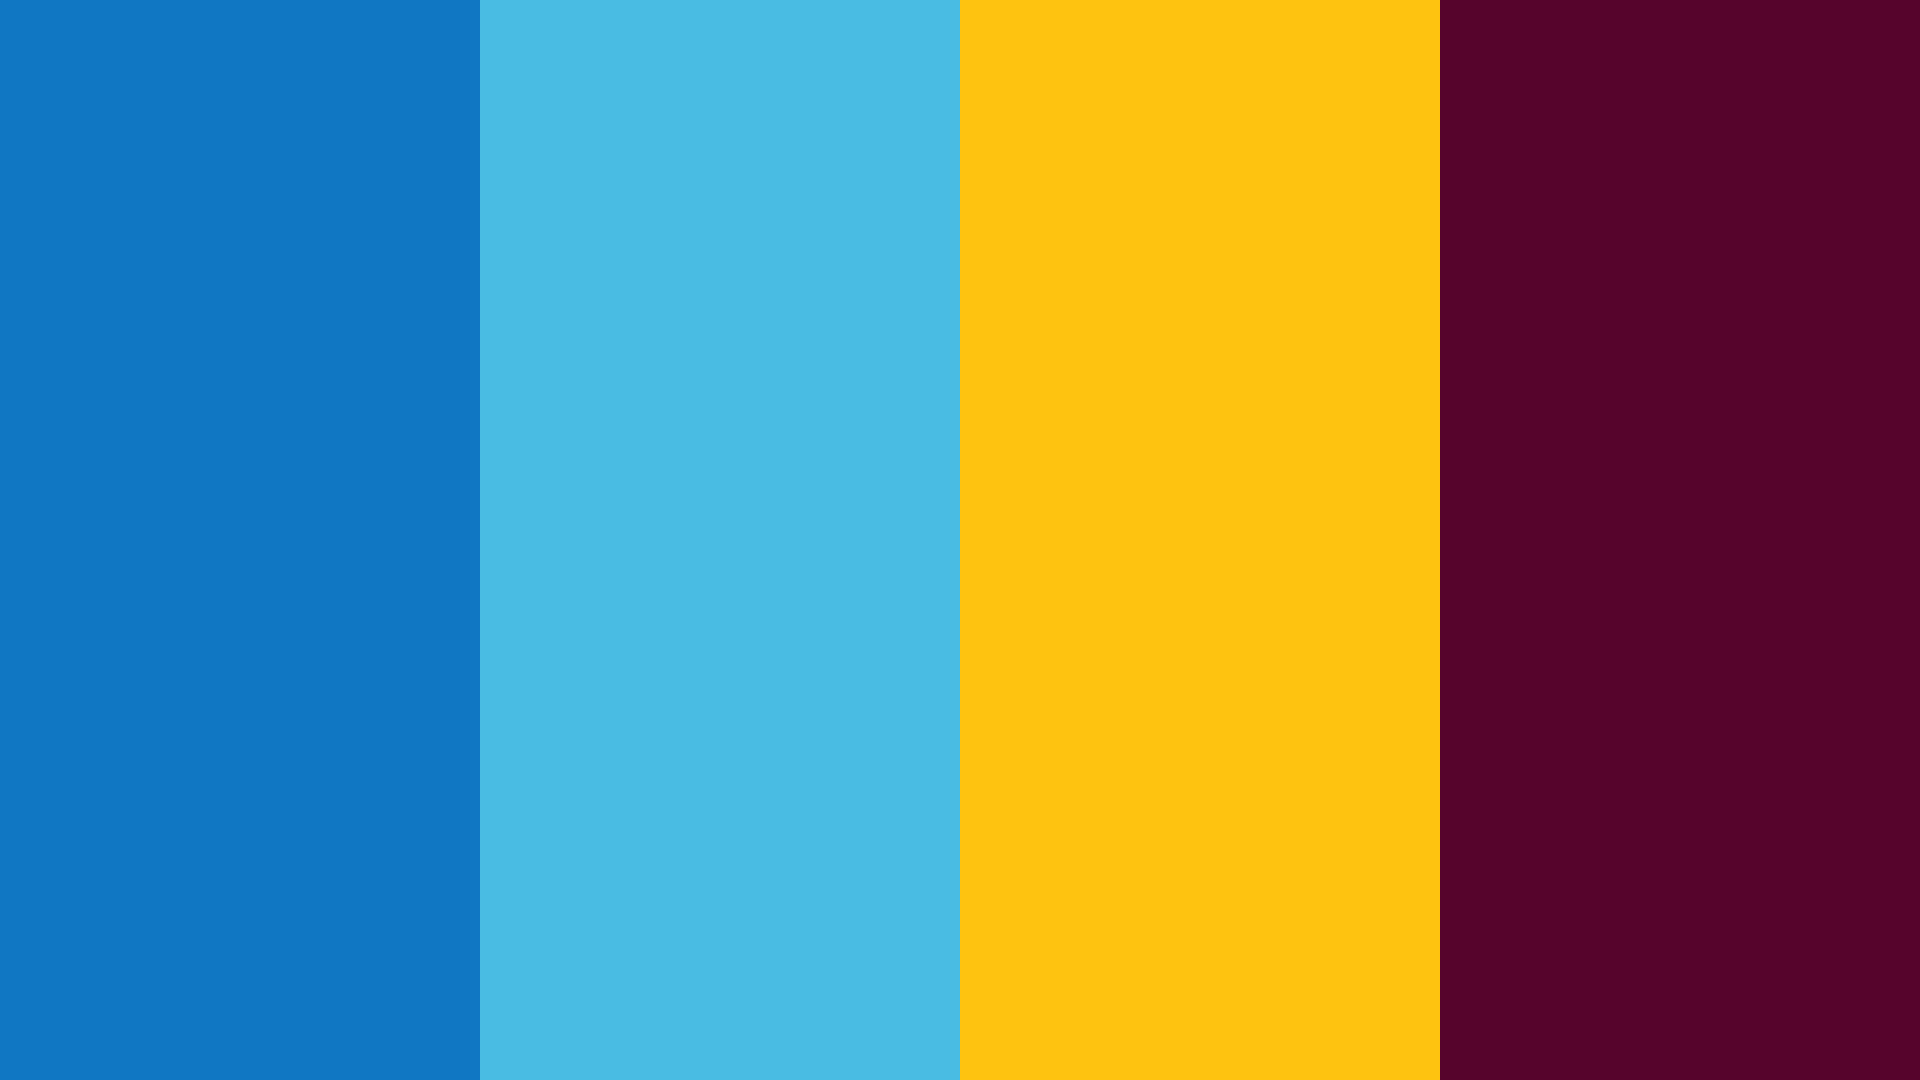 2022 FIFA World Cup Logo (Qatar) Color Scheme Blue SchemeColor.com